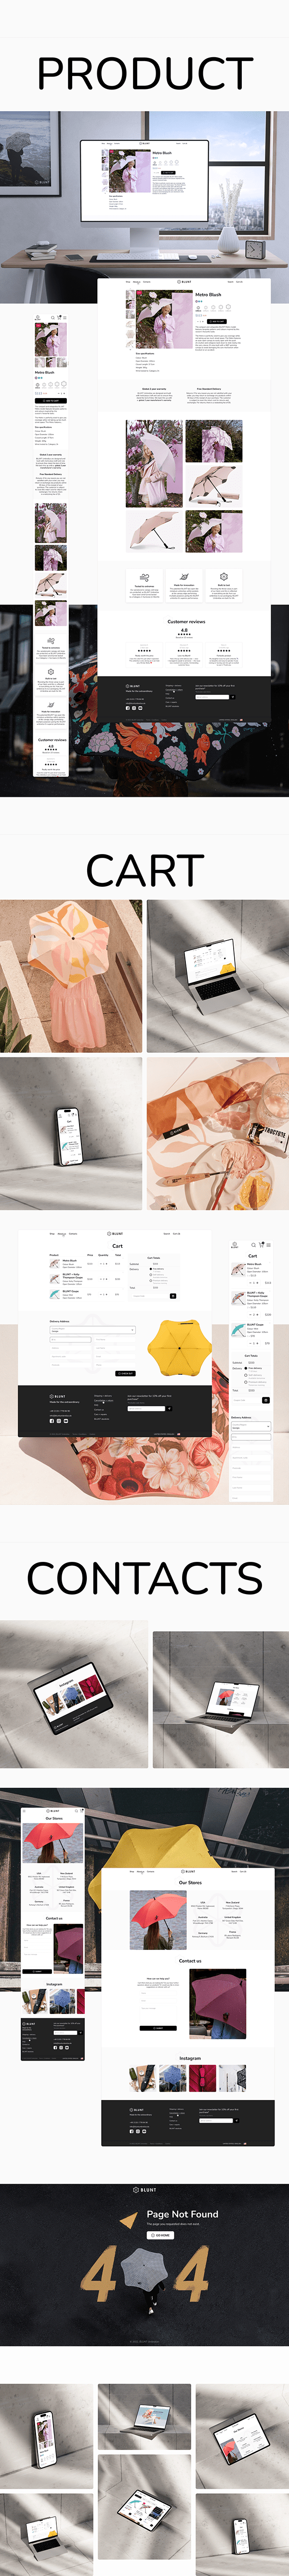 Online Shop | Web Design | Website | Umbrella